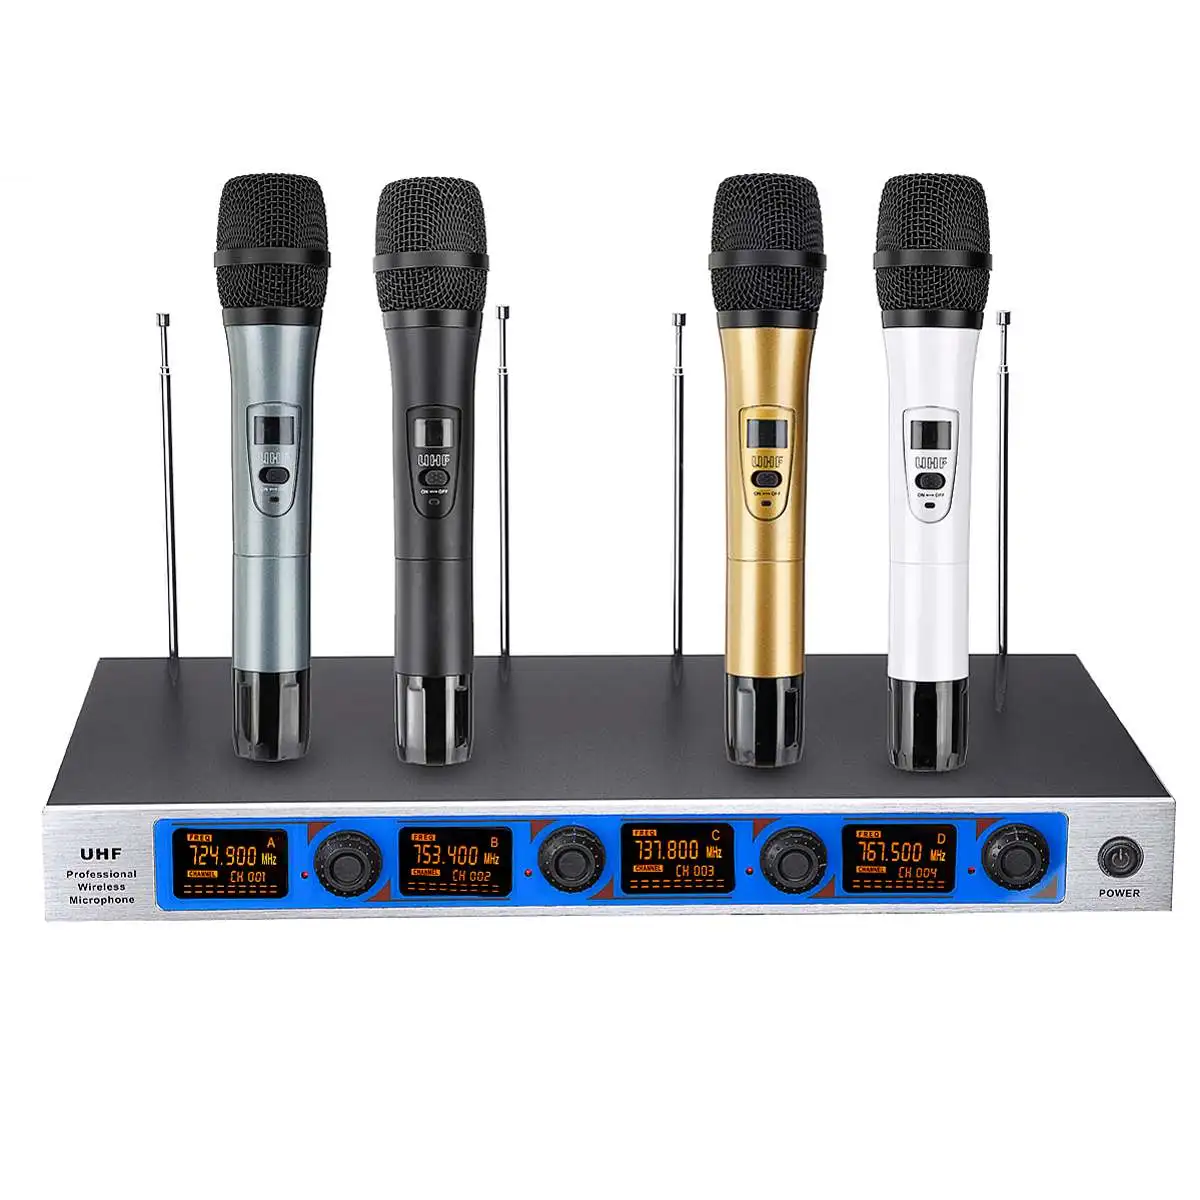 4 Портативный UHF беспроводной микрофон системы динамический профессиональный 4 канала беспроводной для Karoke системы KTV речи Вечерние